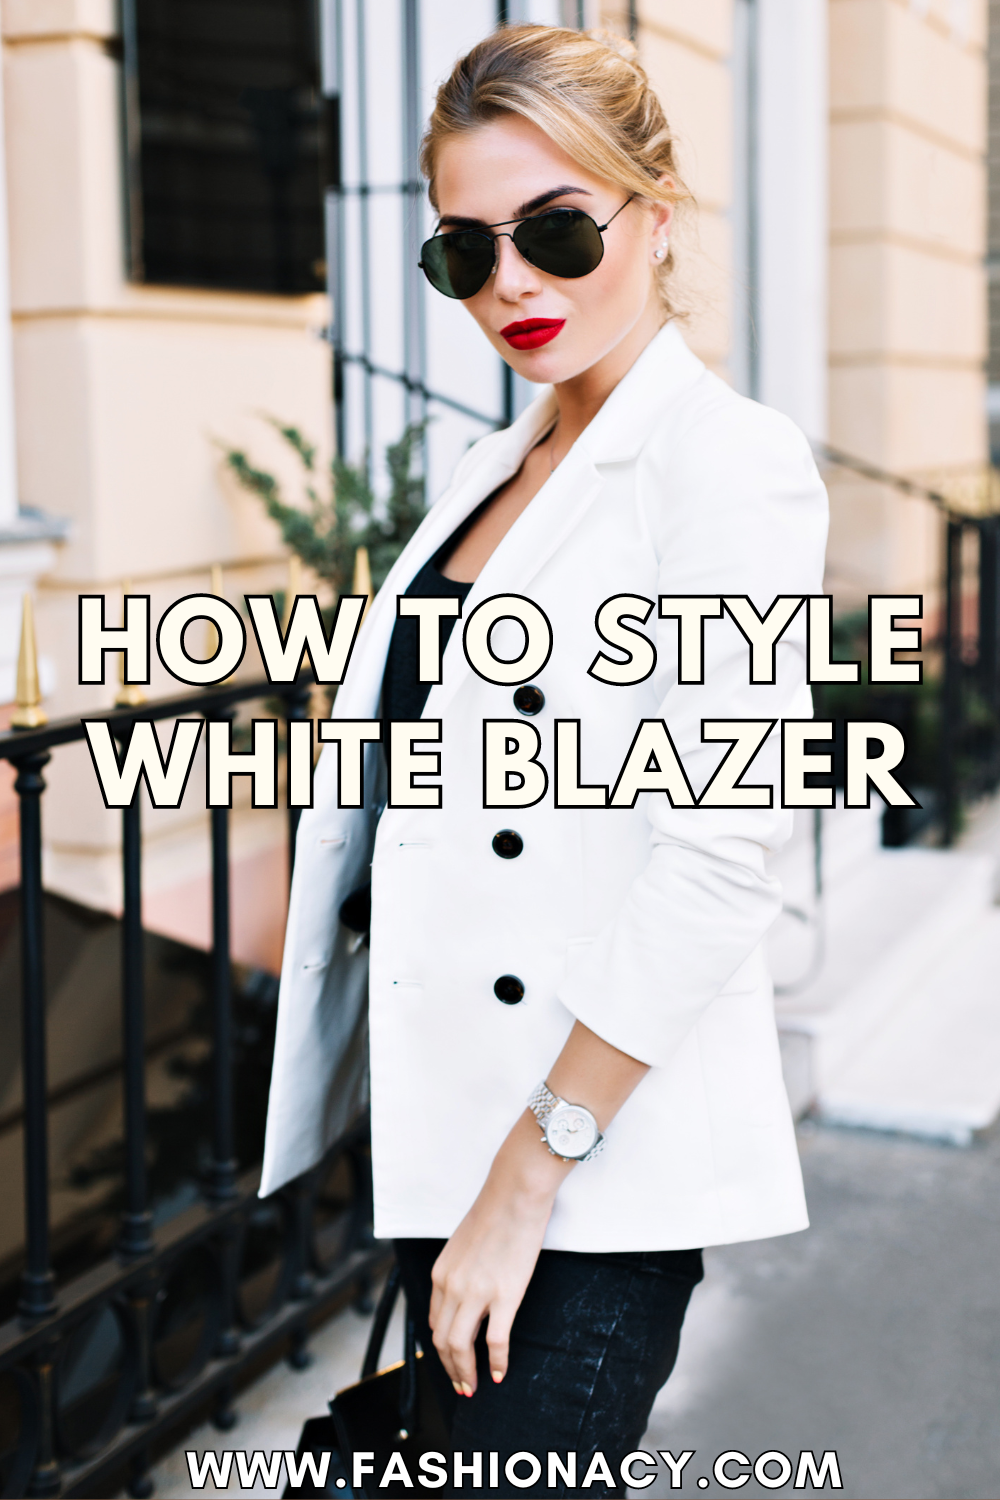 How to Wear a White Blazer (Women)